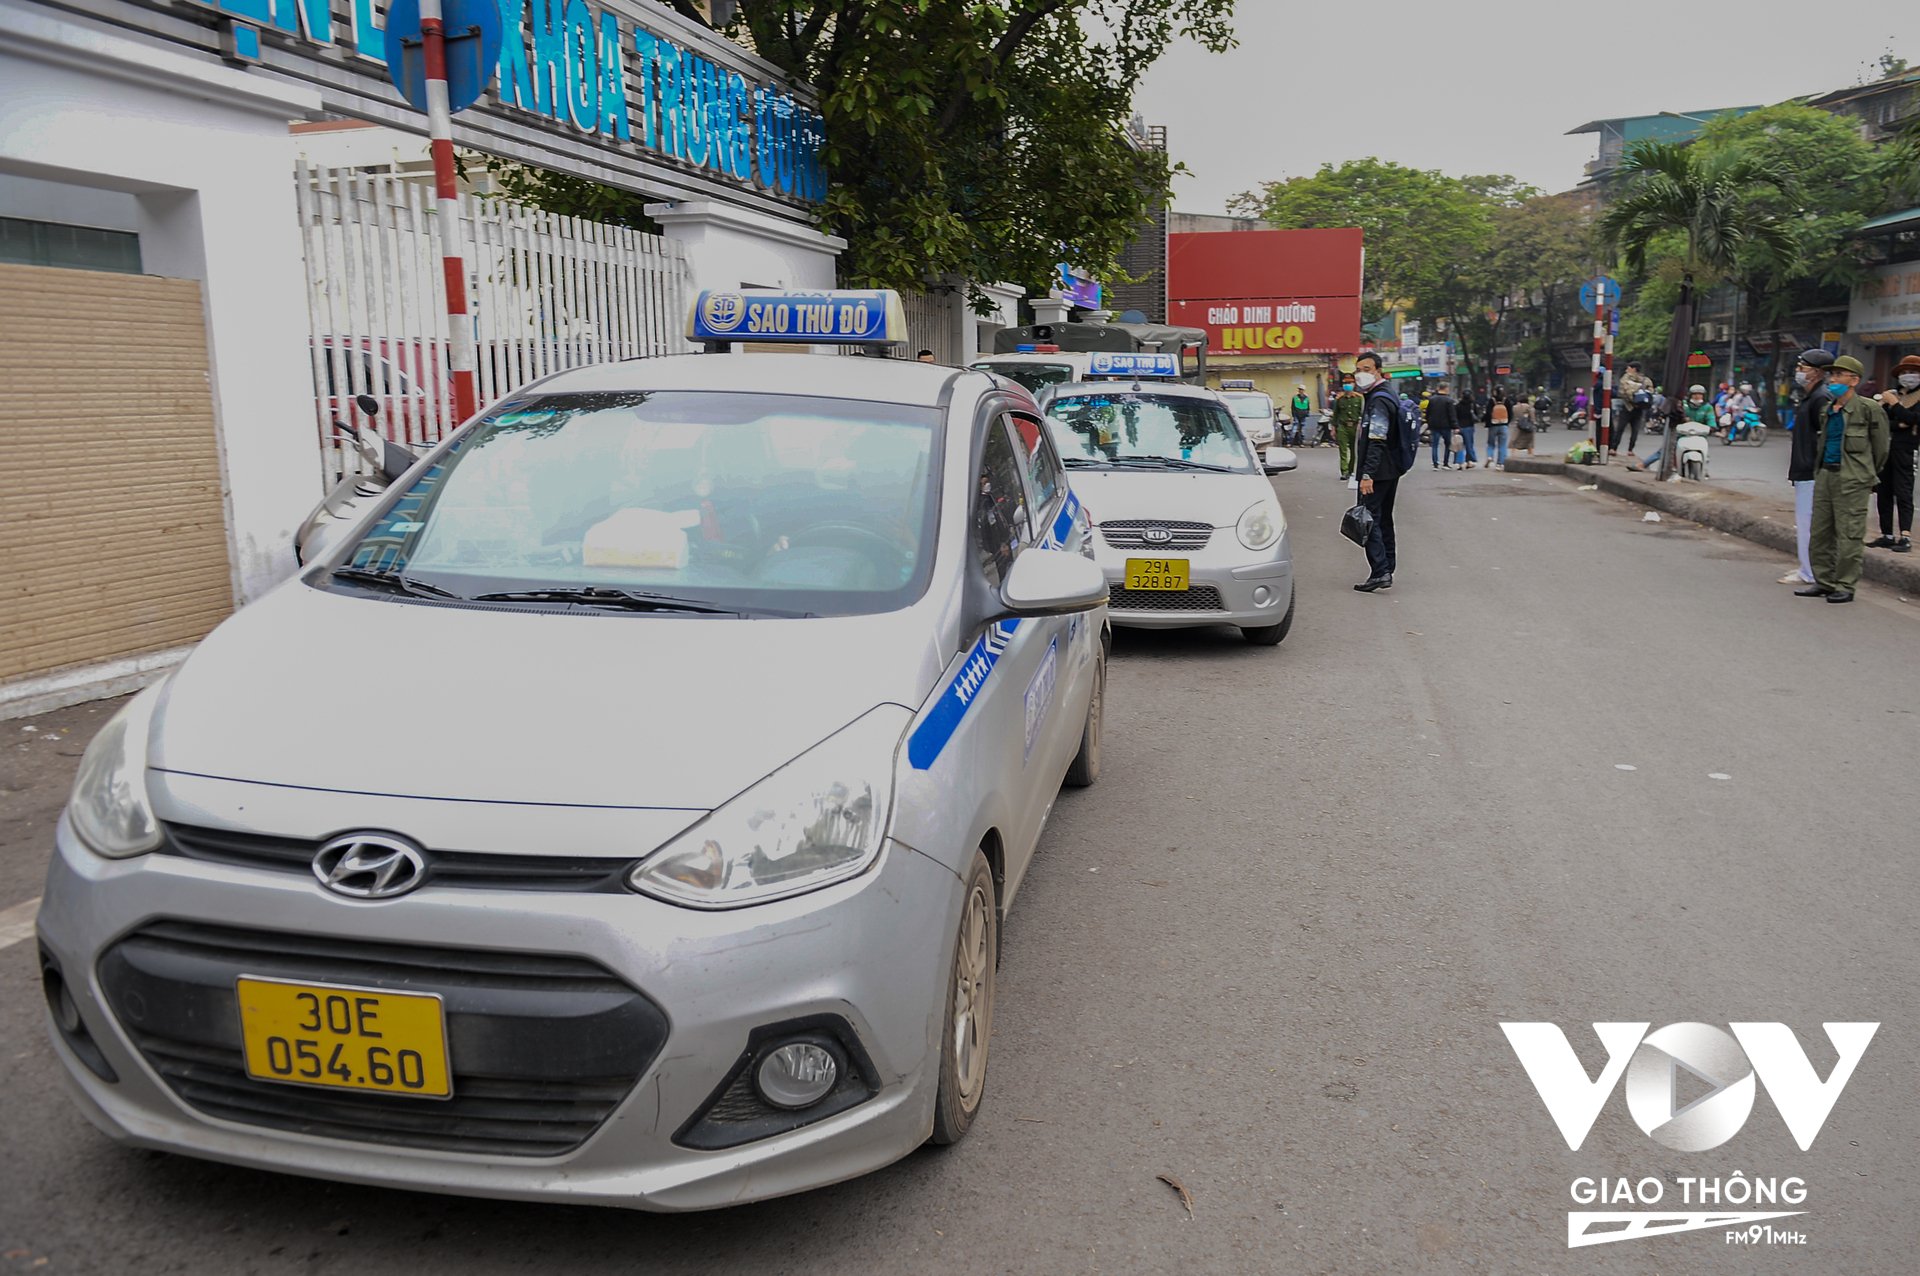 Mở đầu buổi ra quân, lực lượng công an phường Phương Mai đã tuyên truyền và yêu cầu các xe taxi dừng đỗ gây cản trở giao thông tại khu vực cổng bệnh viện Bạch Mai phía đường Phương Mai và cổng Bệnh viện Lão Khoa Trung Ương.